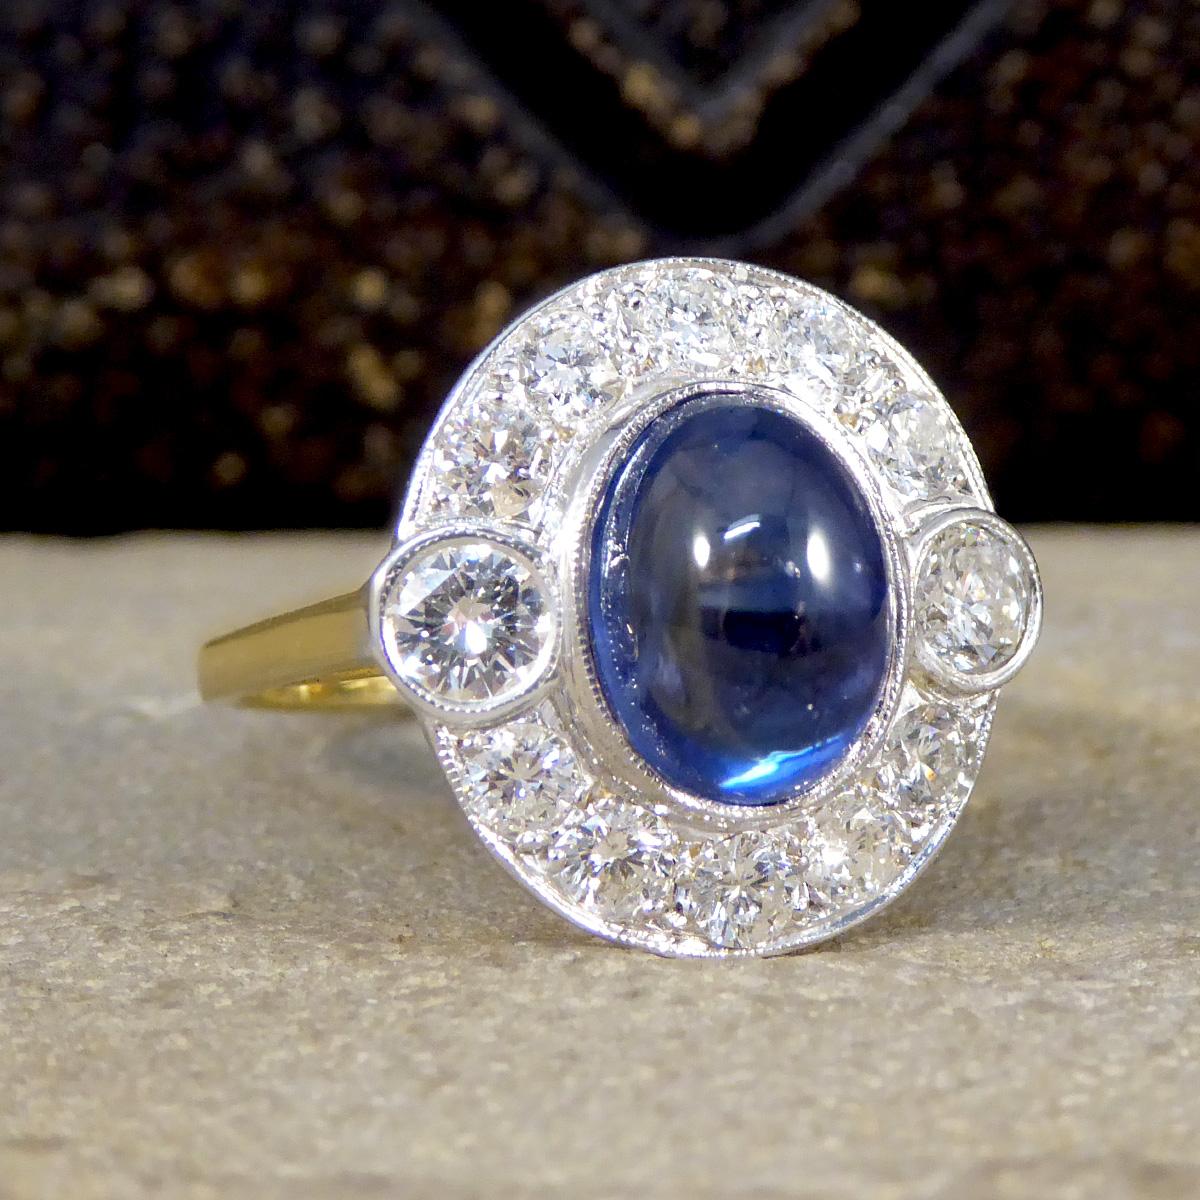 Dieser schöne Ring zeigt einen verführerischen blauen Saphir im Cabochon-Schliff mit einem Gewicht von 5,00ct, der sicher in einer Fassung aus 18ct Weißgold gehalten wird. Der Saphir ist von 12 Diamanten im Brillantschliff mit einem Gesamtgewicht